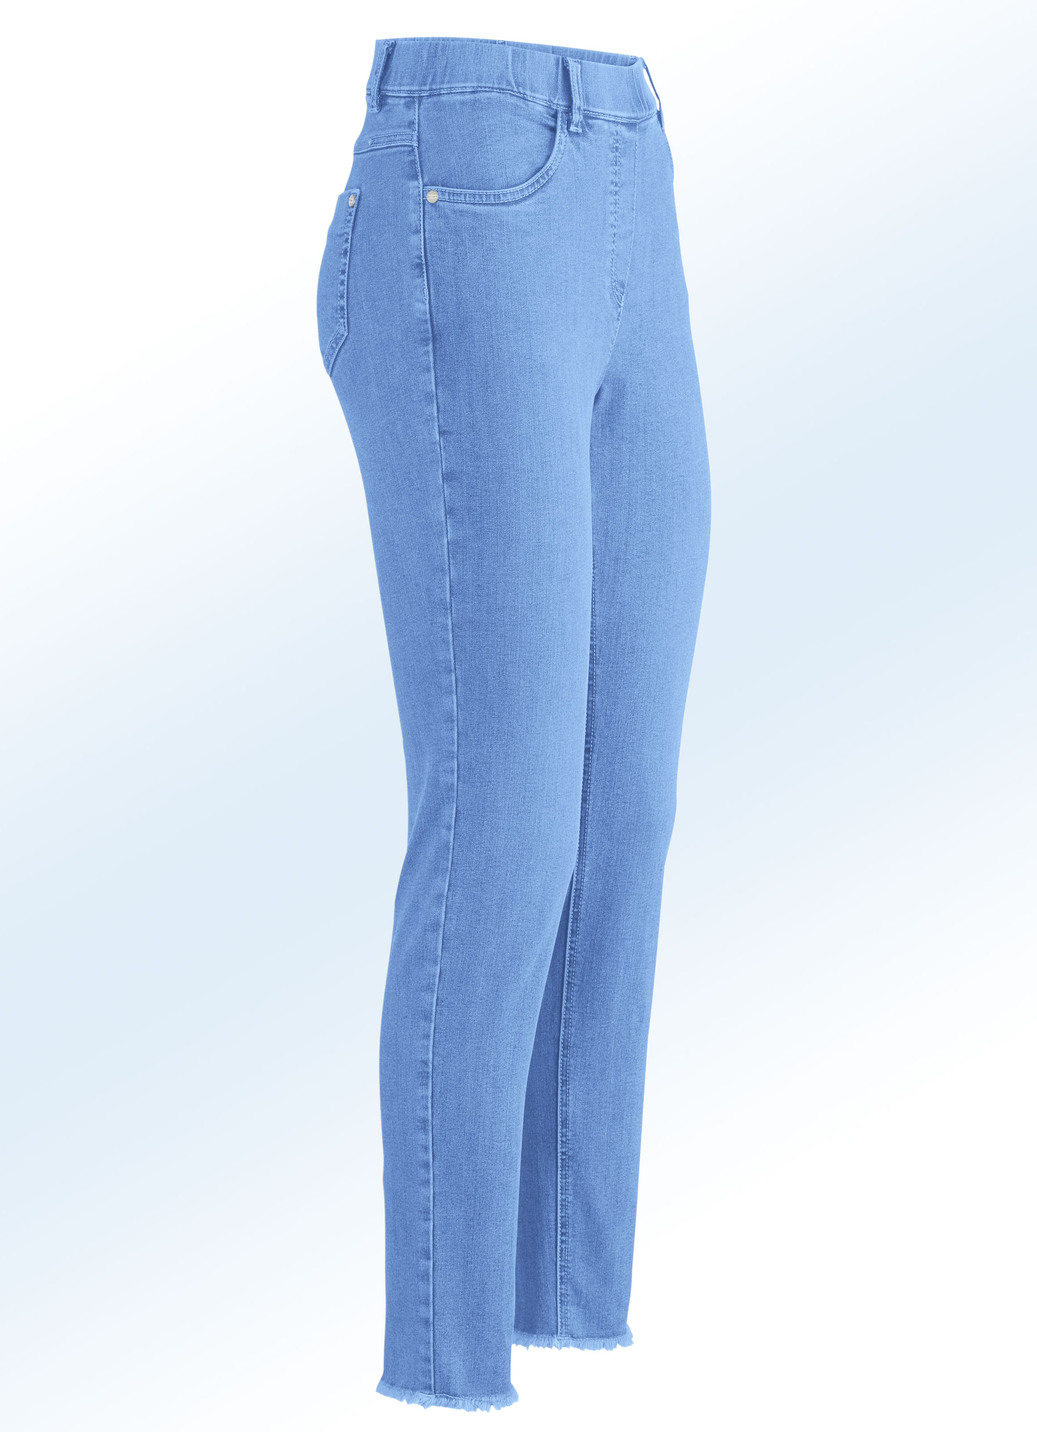 Magic-Jeans mit angesagtem Fransensaum, Azurblau, Größe 34 von ASCARI